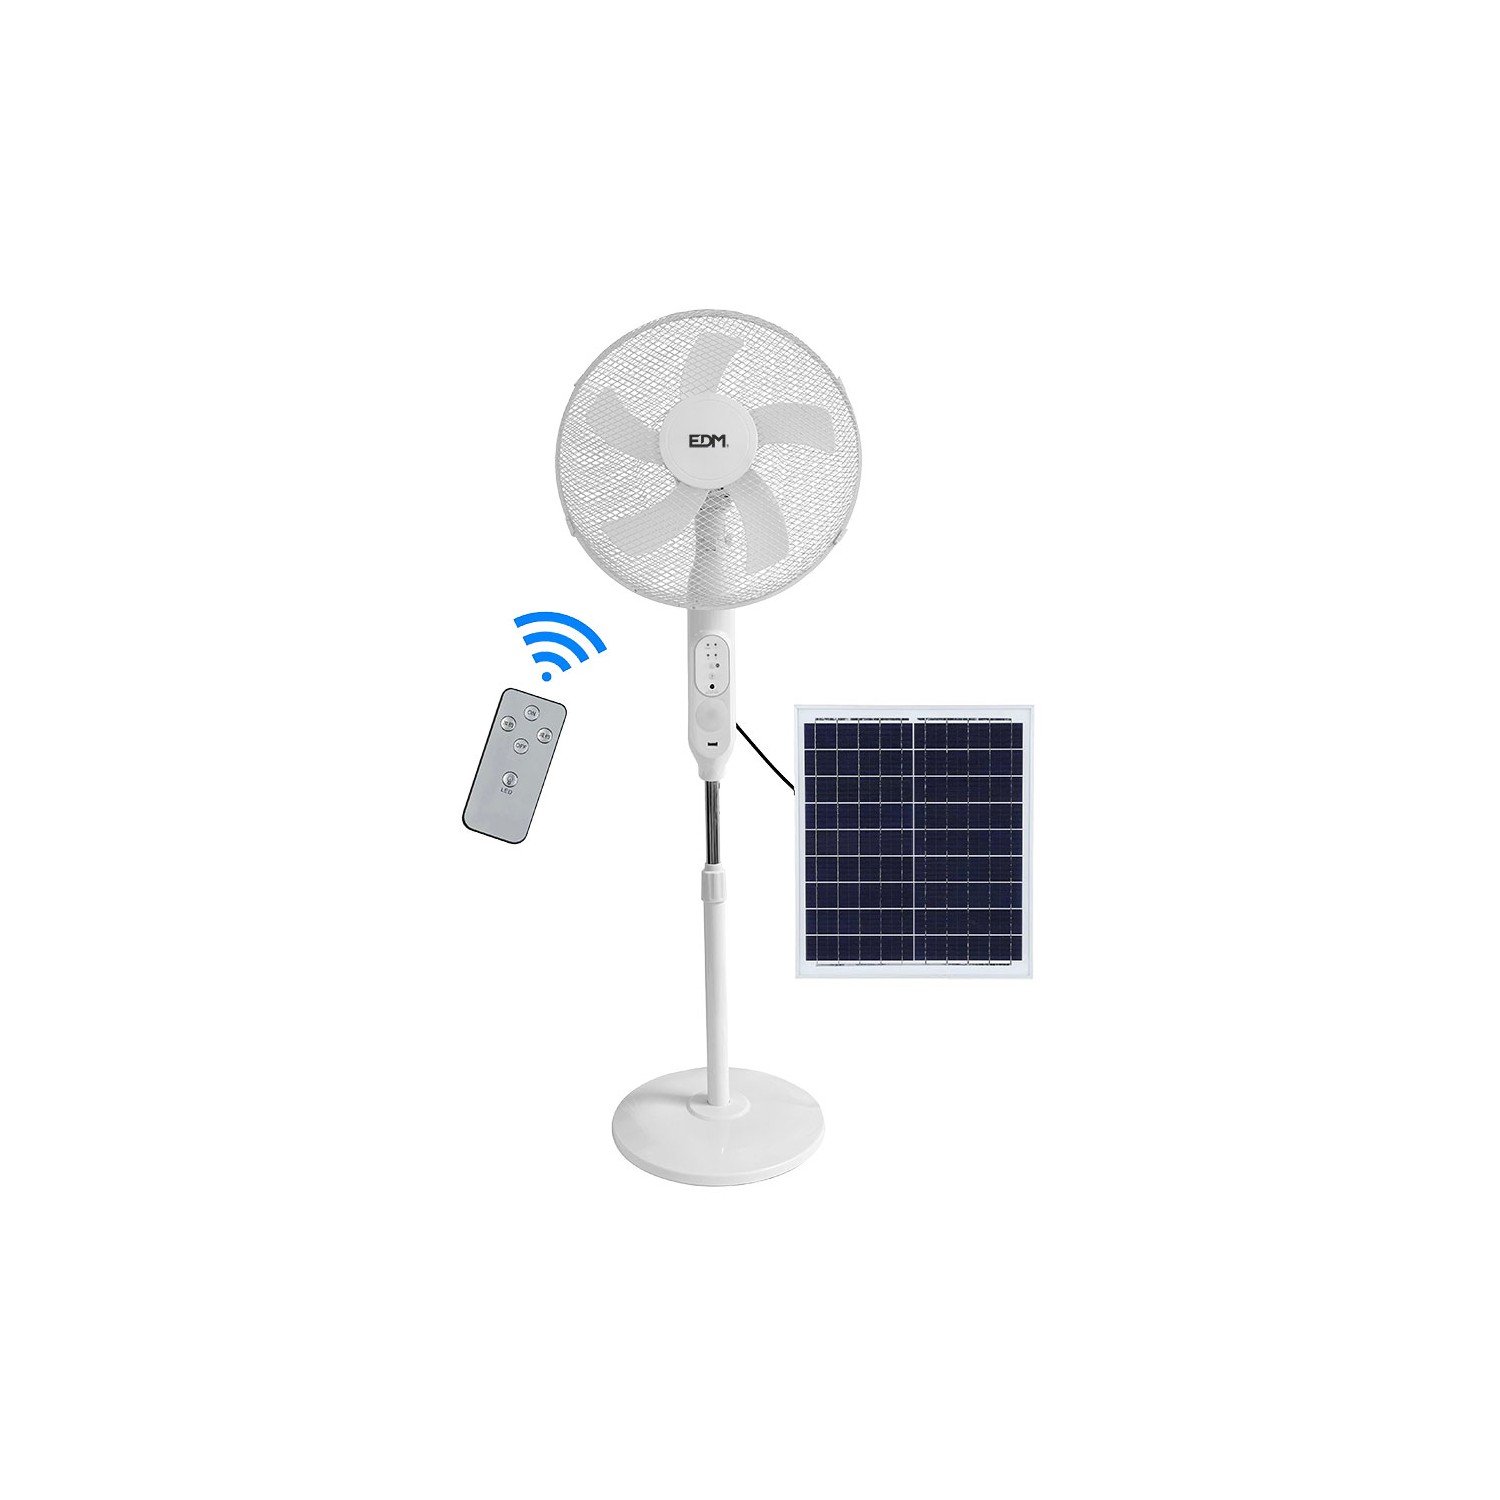 Ventilador de pie solar 25w edm